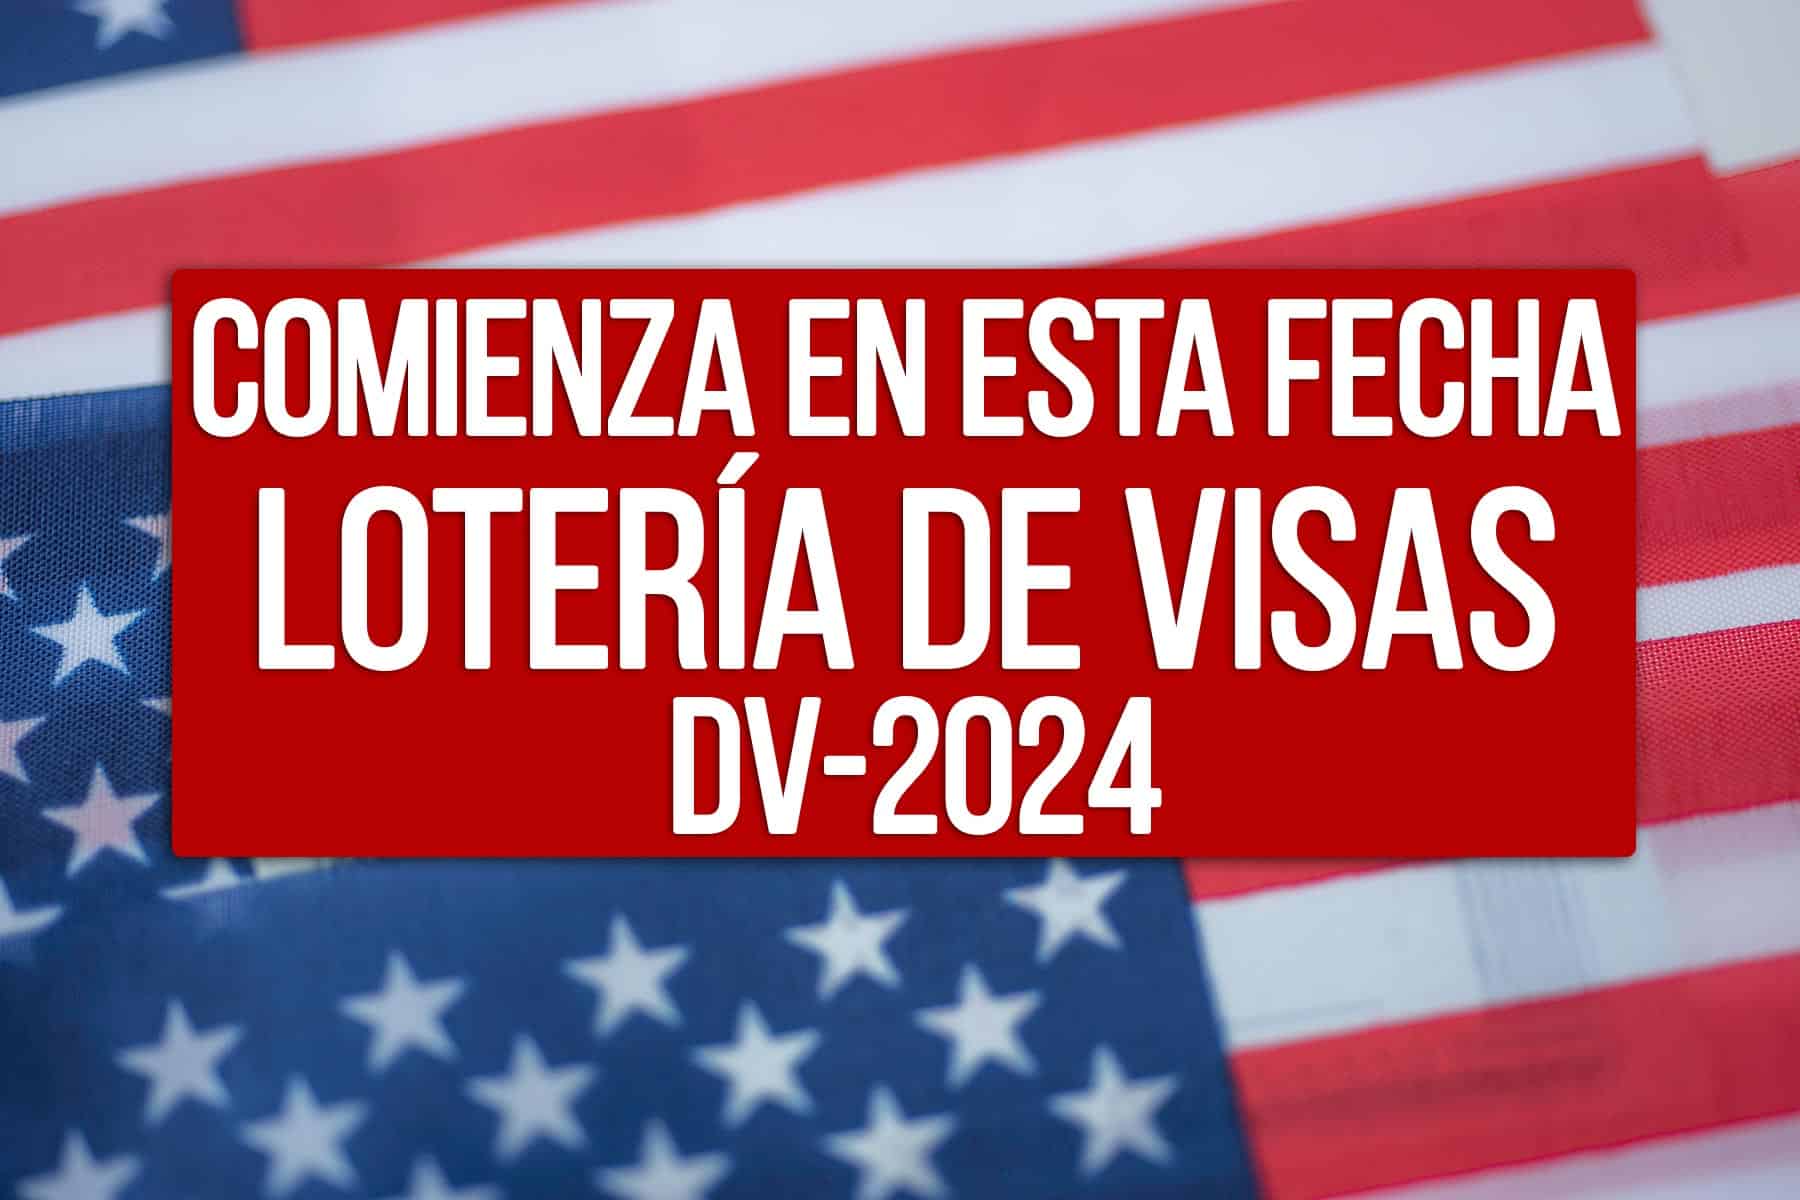 fecha de inicio de loteria de visas estados unidos dv 2024